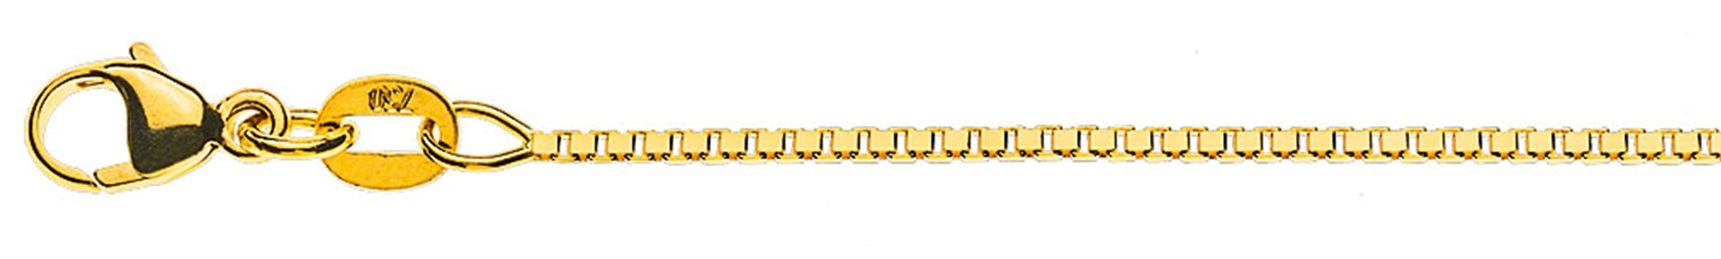 AURONOS Prestige Collier en or jaune 18K vénitien diamanté 40cm 1.1mm